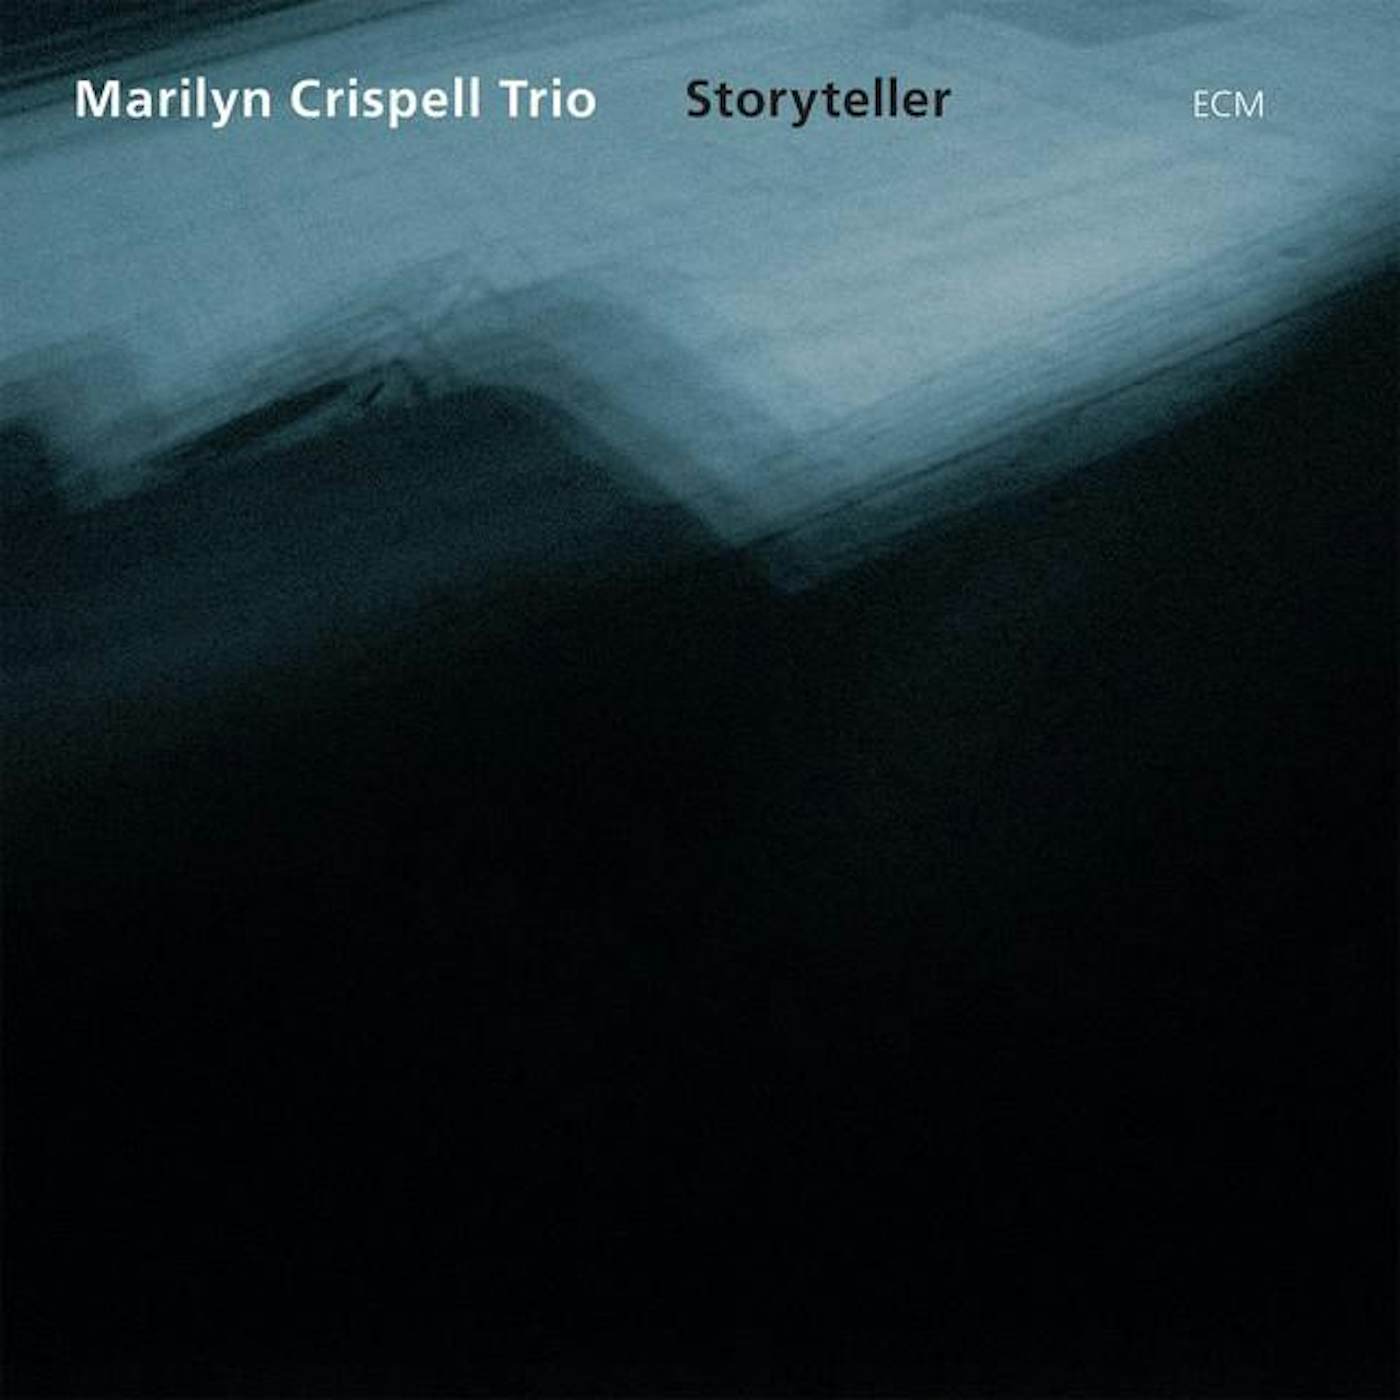 Marilyn Crispell Trio